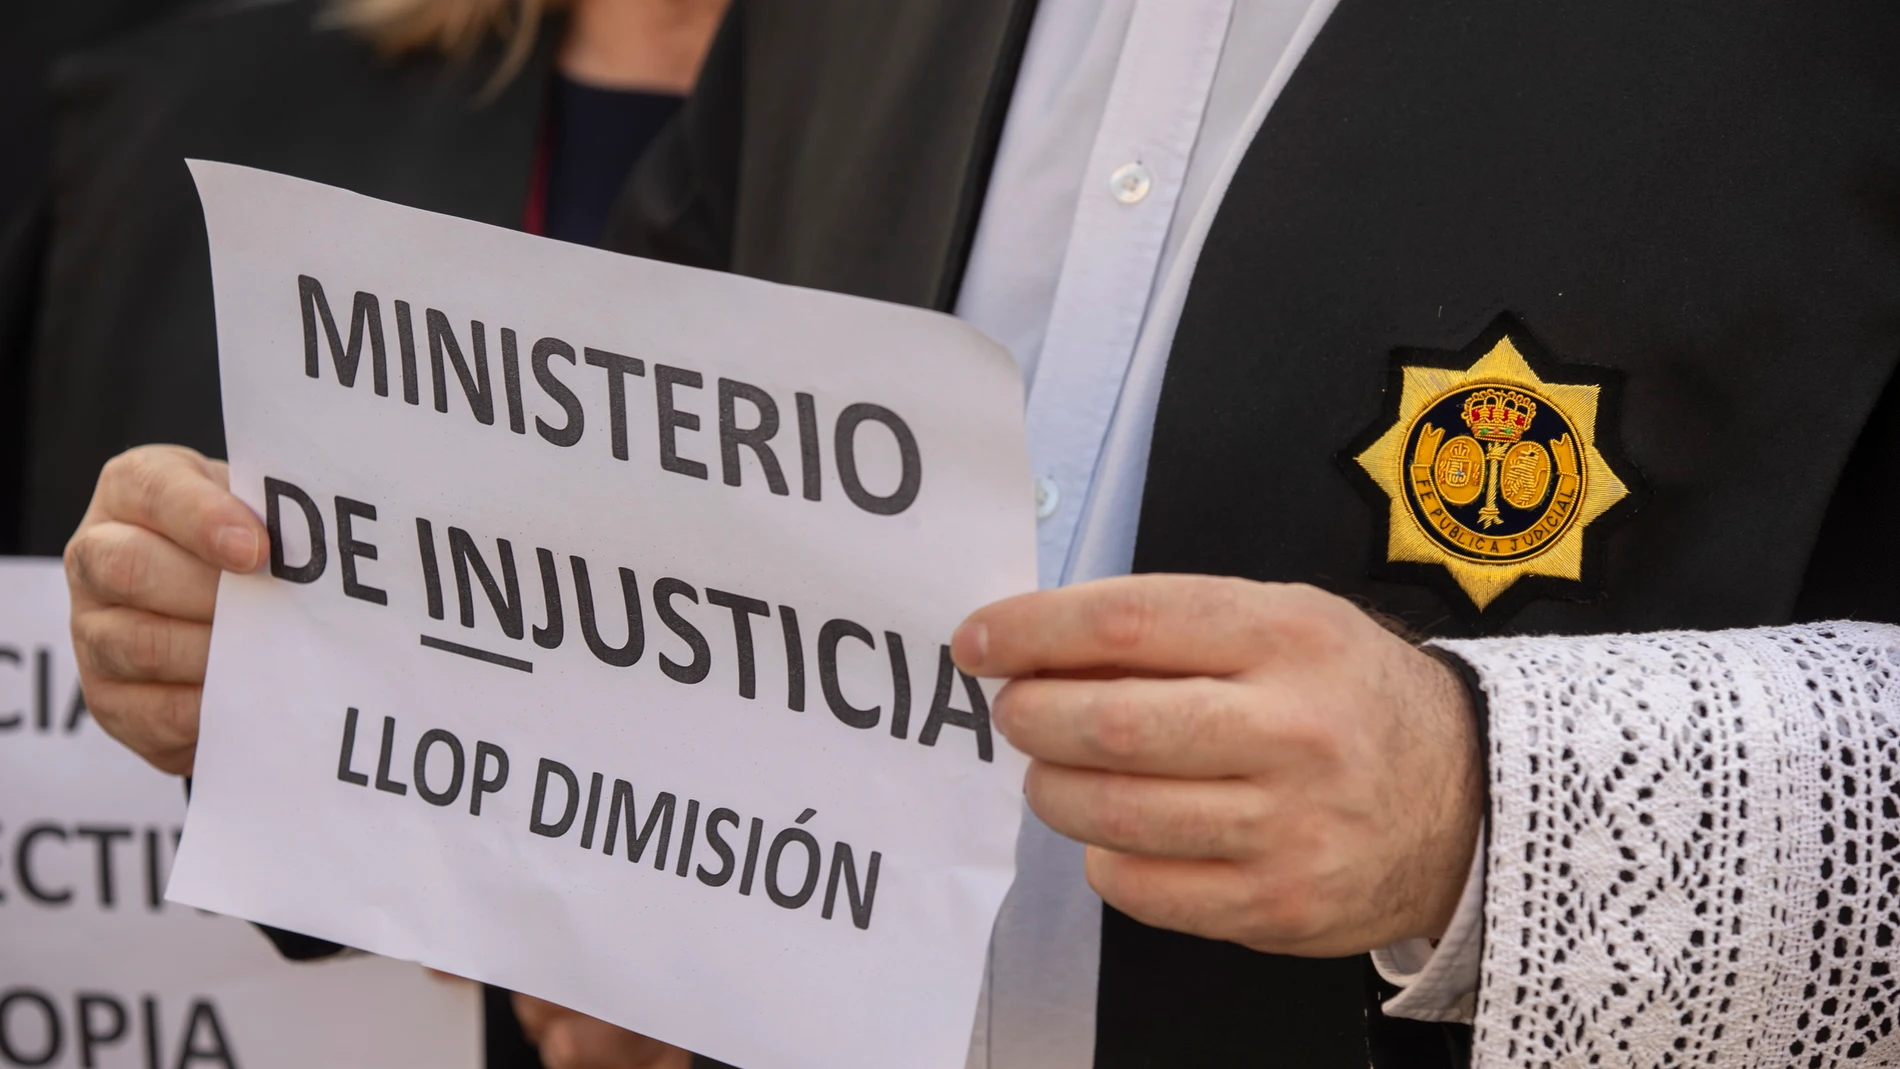 La reunión del Ministerio con los letrados de Justicia en huelga acaba sin acuerdo tras 15 horas